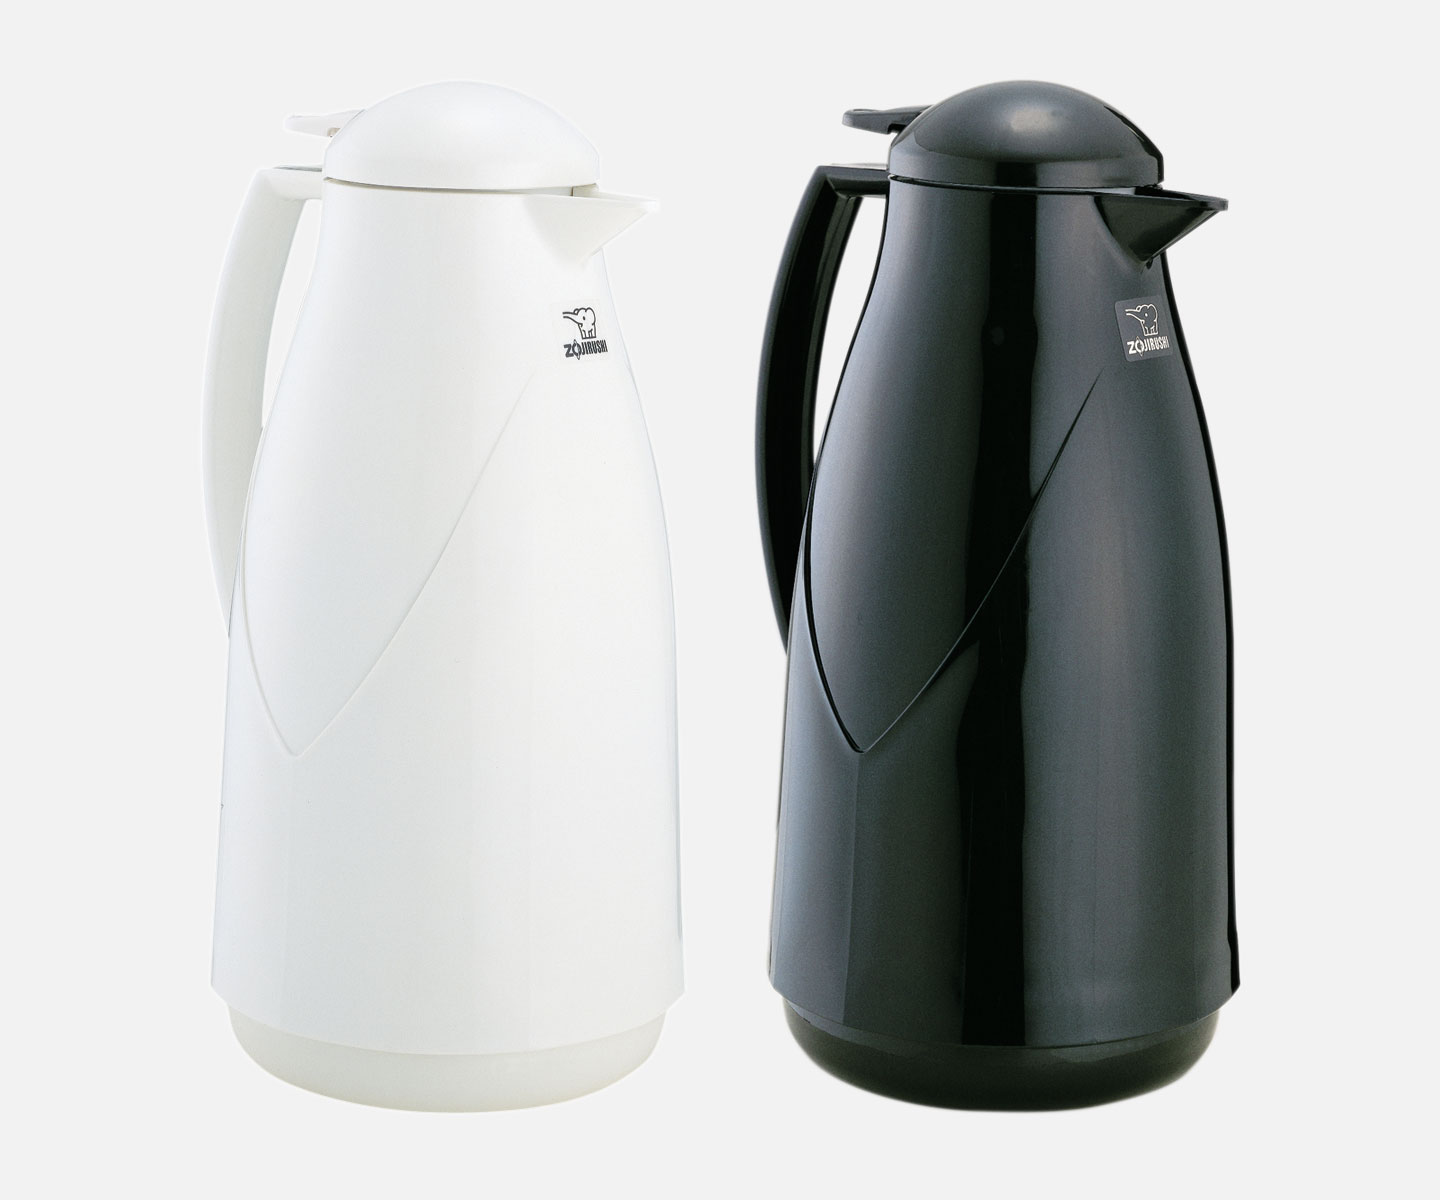 Zojirushi Glass Vacuum Carafe - 34 Ounces - Black